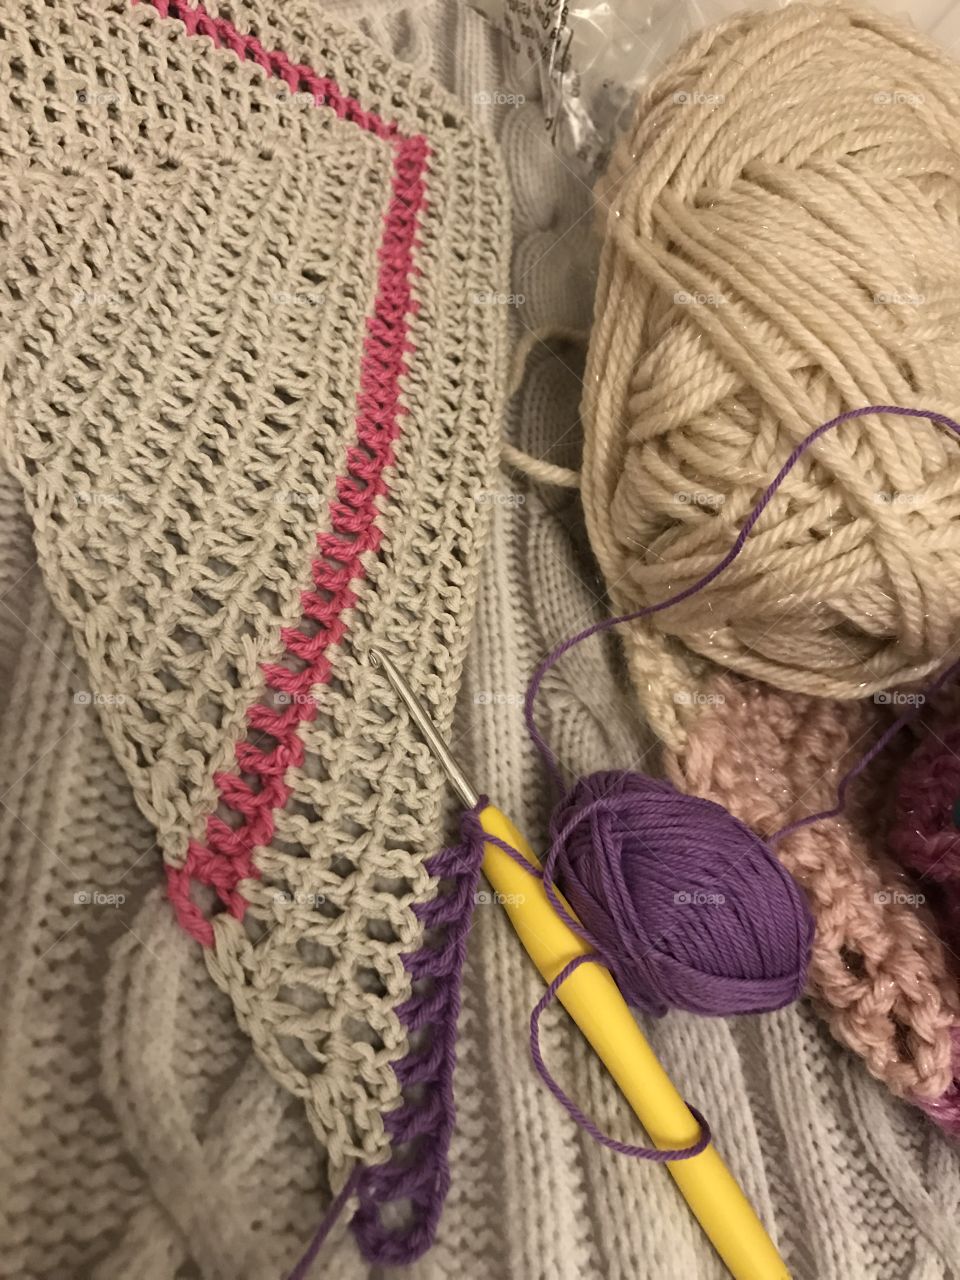 Crochet craft yarn wool